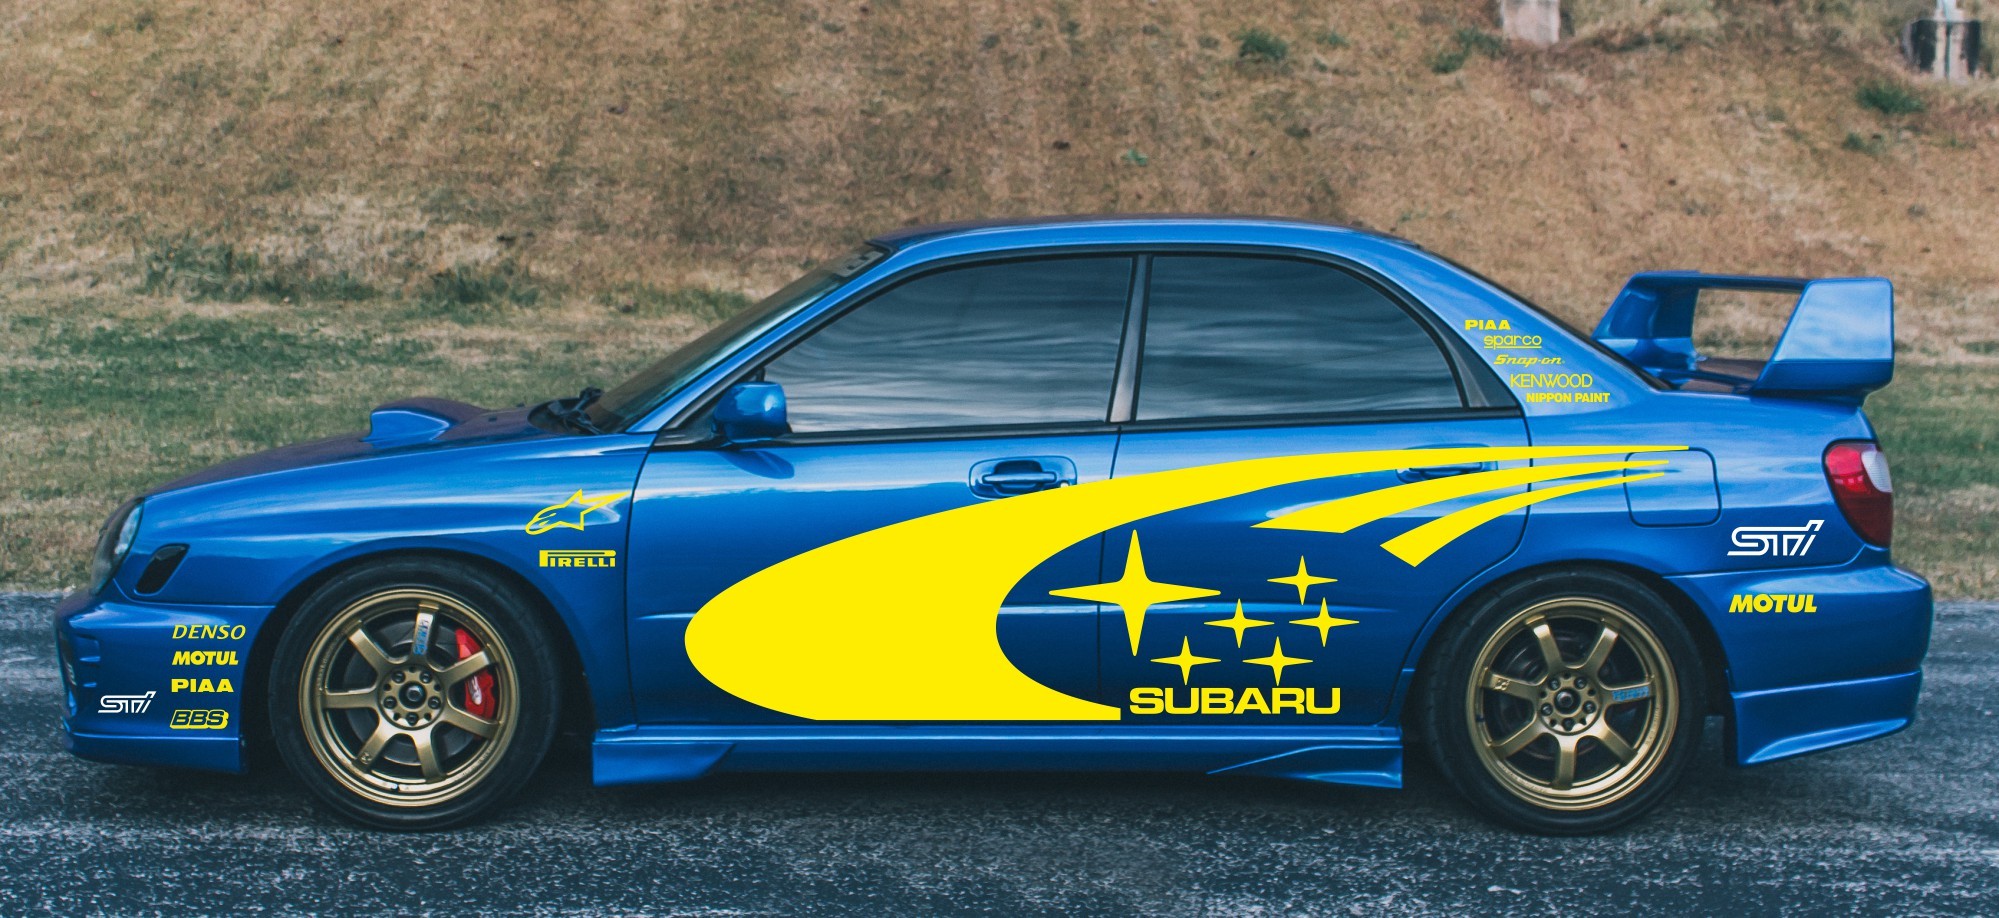 Naklejki Subaru Impreza WRC STI rajdowe sticker decals